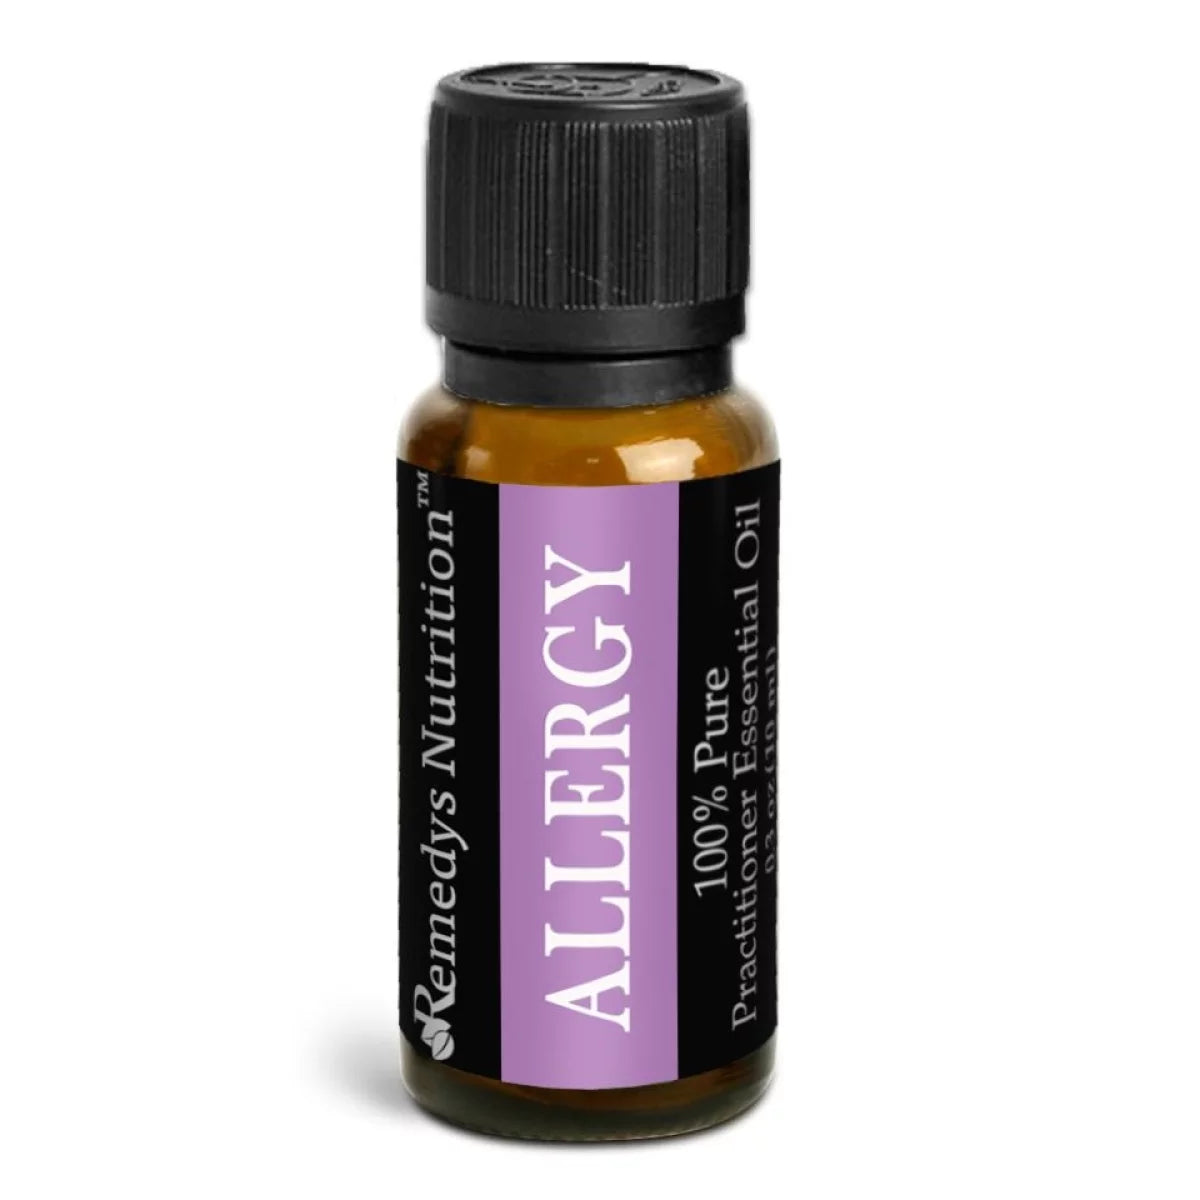 Allergy Essential Oil | 10 mL